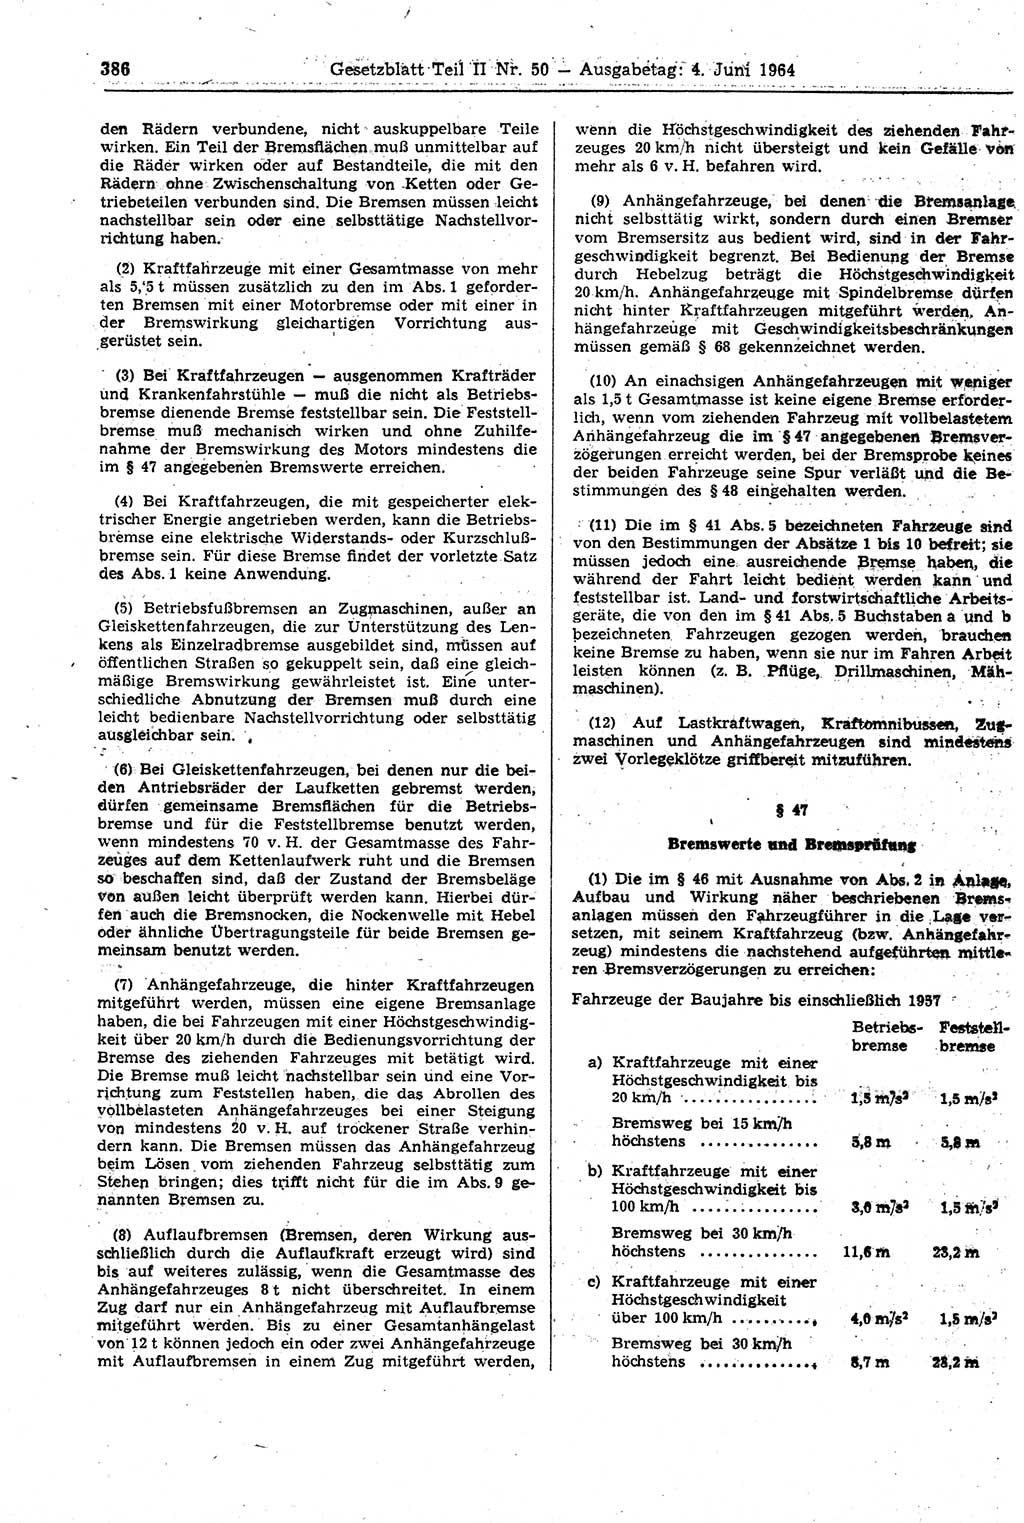 Gesetzblatt (GBl.) der Deutschen Demokratischen Republik (DDR) Teil ⅠⅠ 1964, Seite 386 (GBl. DDR ⅠⅠ 1964, S. 386)